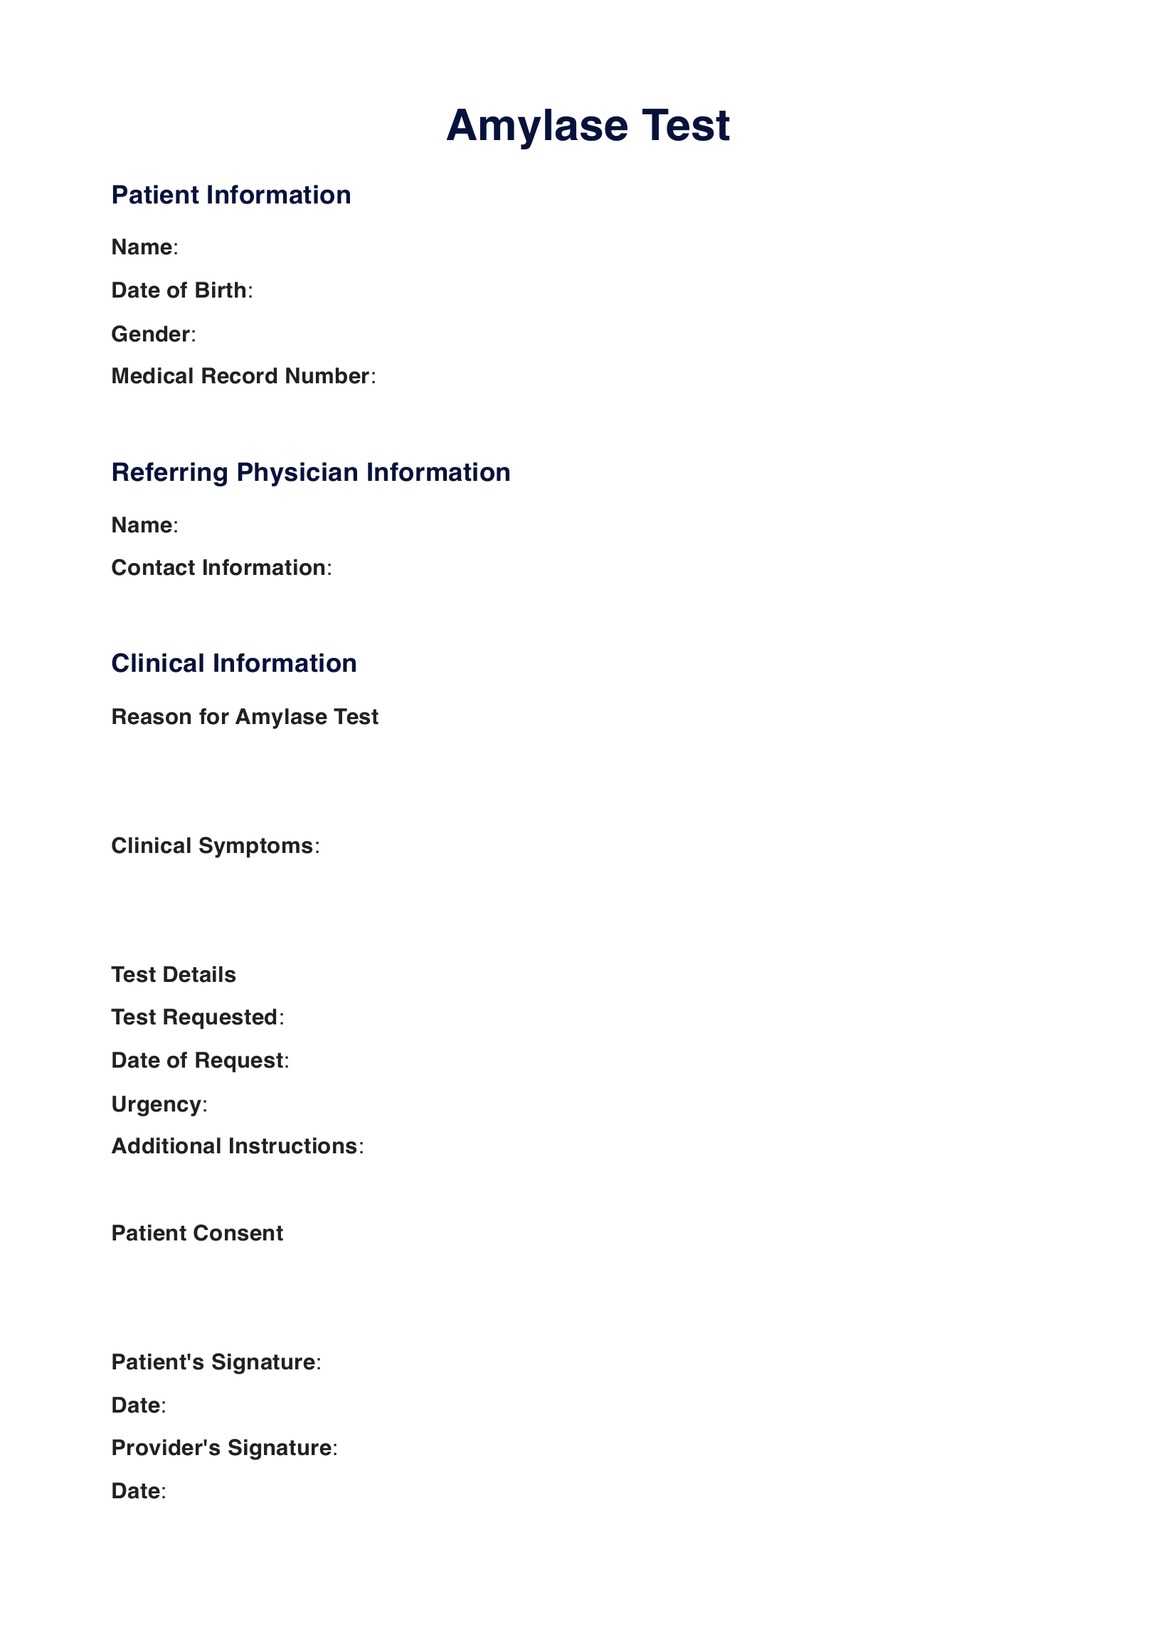 Amylase Test PDF Example